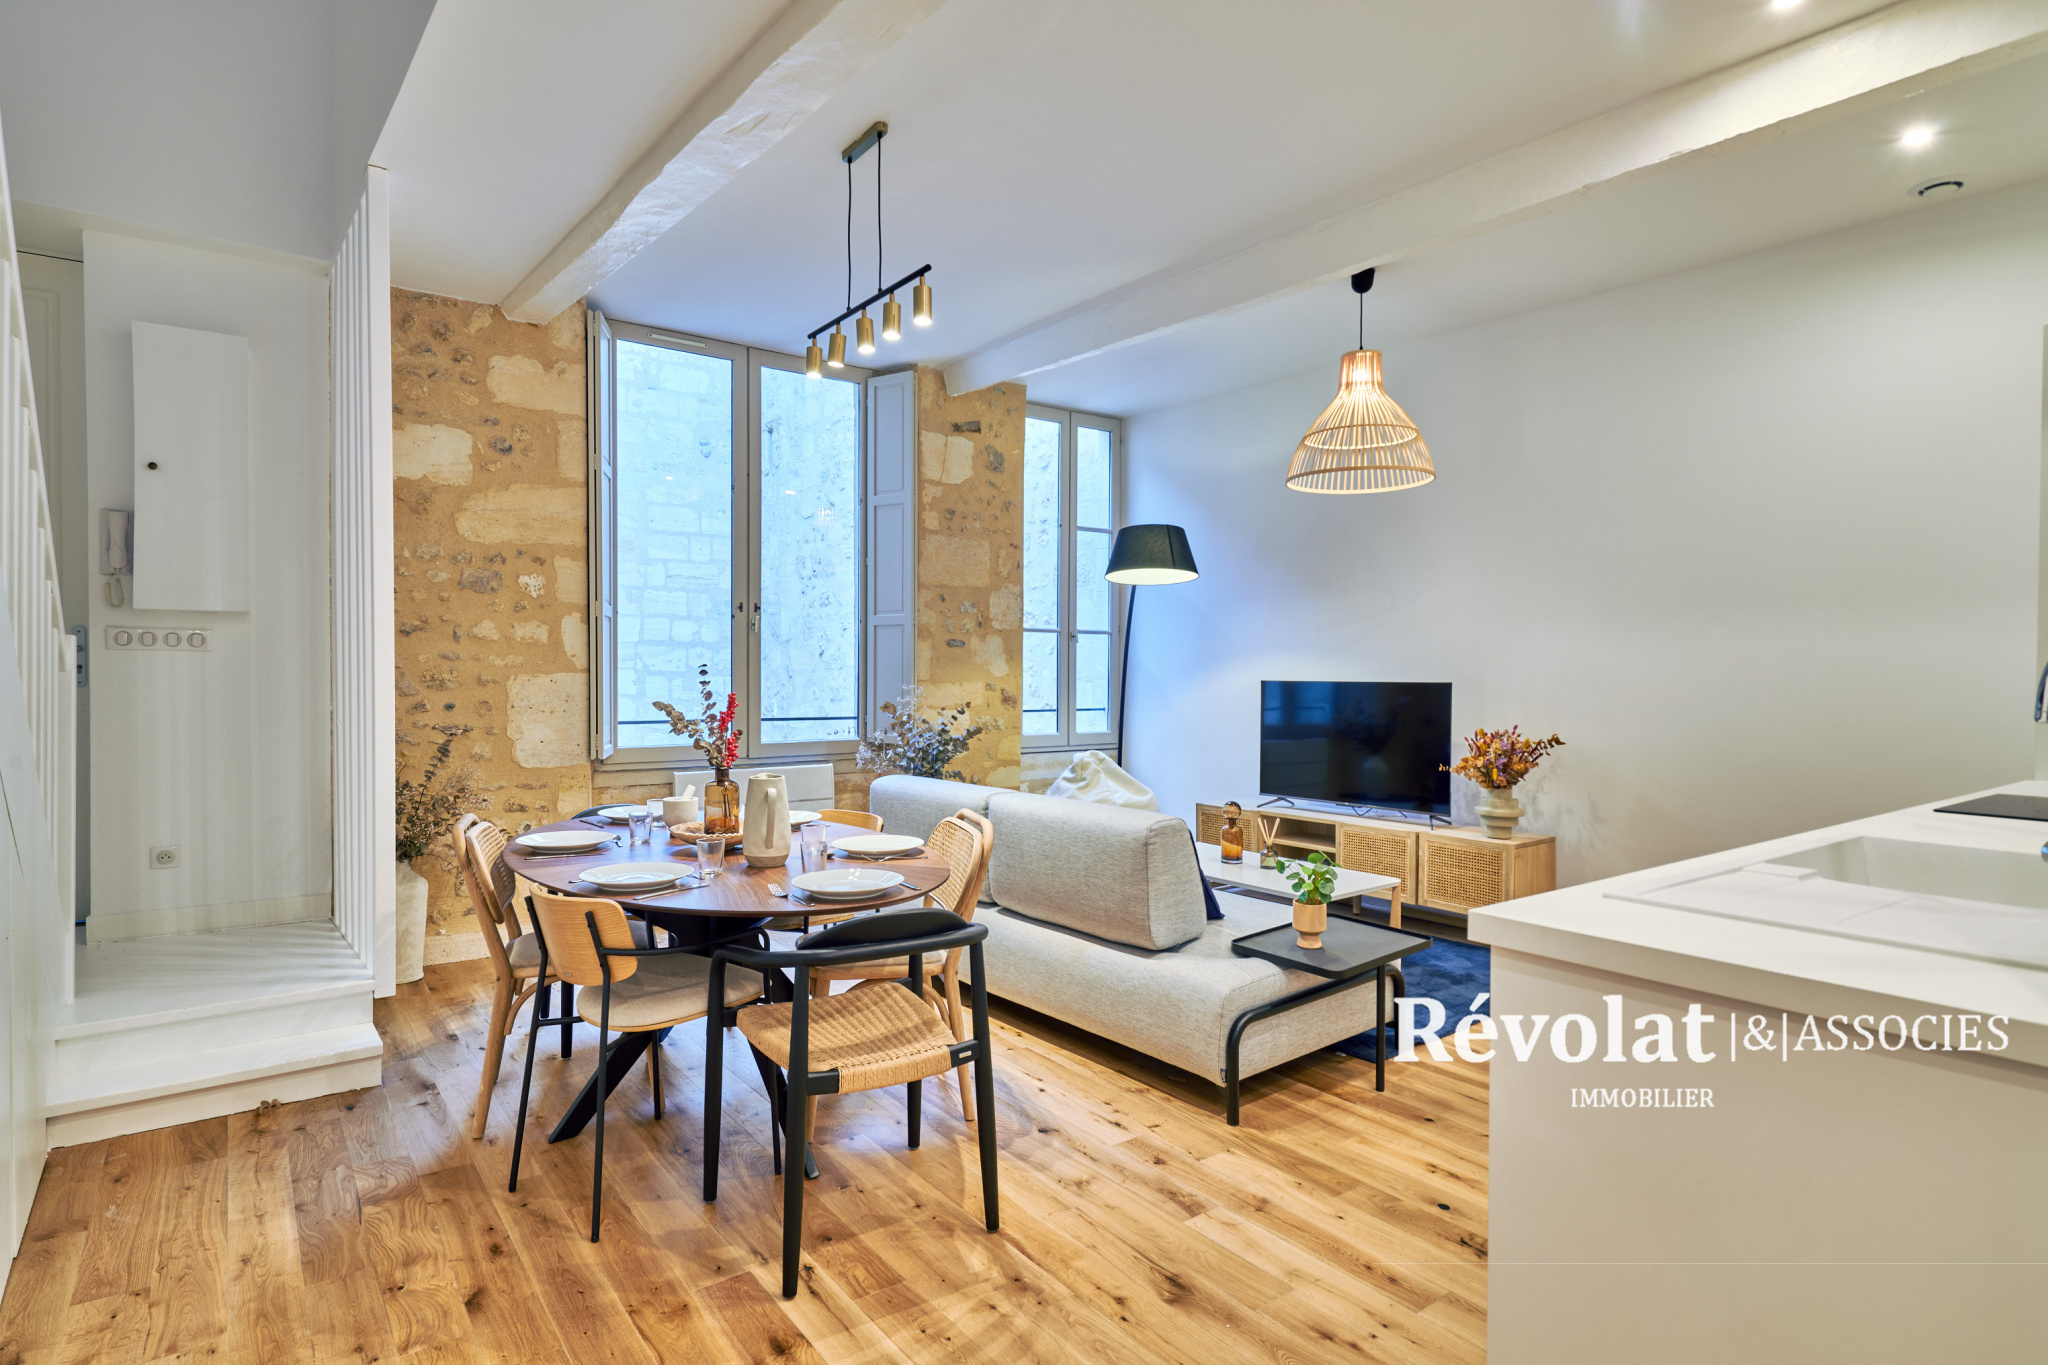 Vente Appartement 95m² 5 Pièces à Bordeaux (33000) - Révolat & Associés